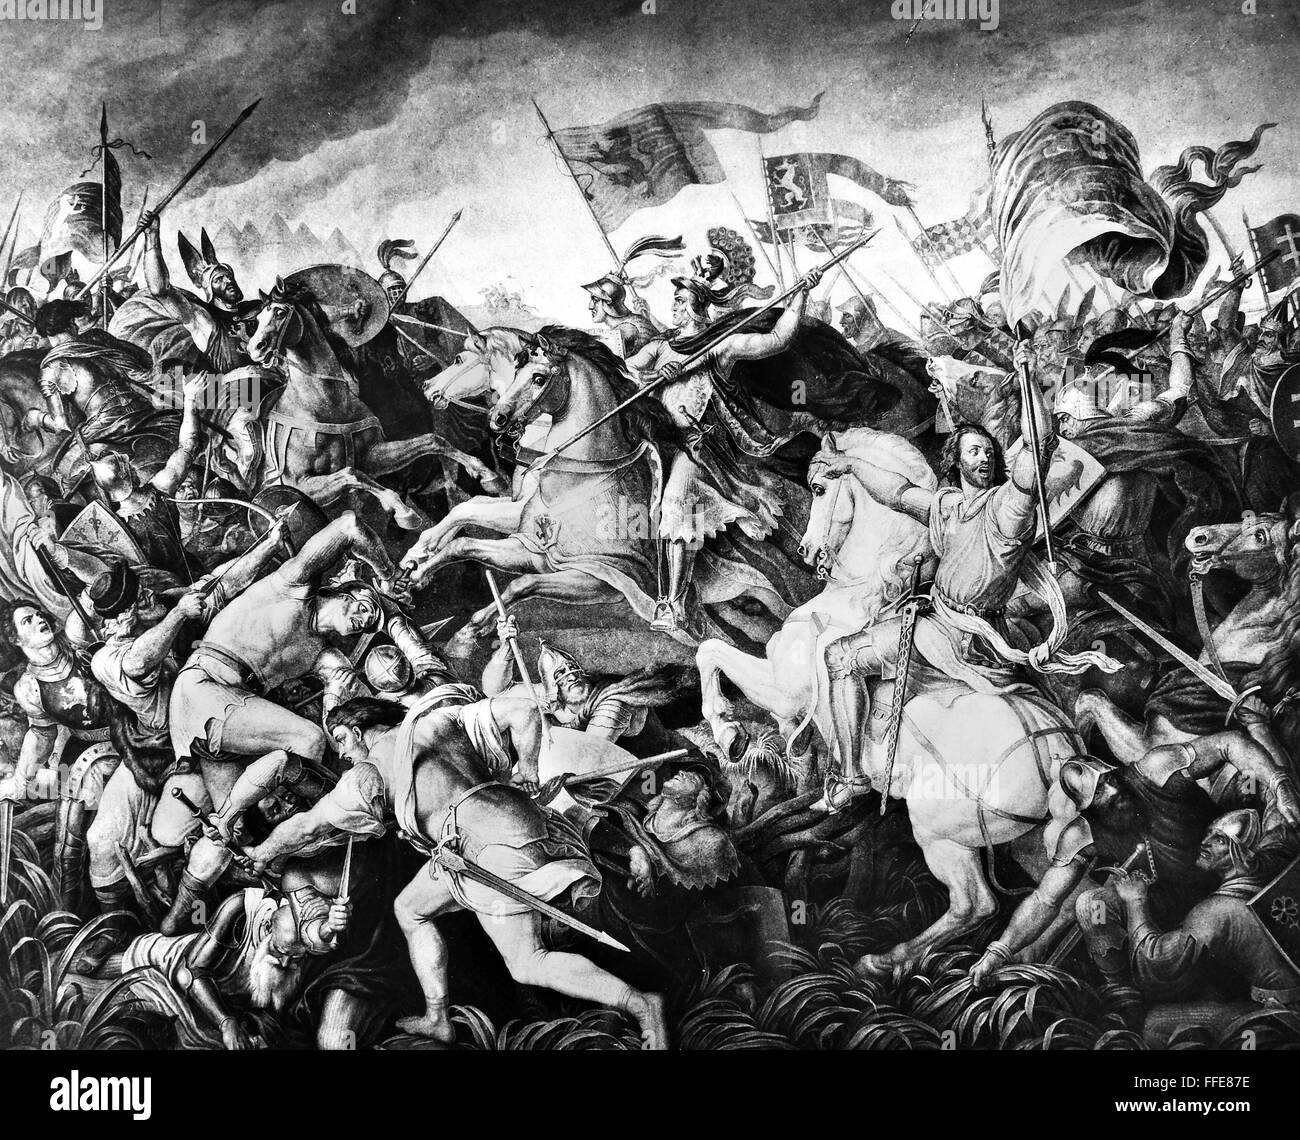 SCHLACHT AM MARCHFELD, 1278. /nThe Schlacht von Rudolph von Habsburg gegen Ottokar von Böhmen bei Dⁿrnkrut, 26 August 1278. Gemälde von Julius Schnorr von Carolsfeld, 1835. Stockfoto